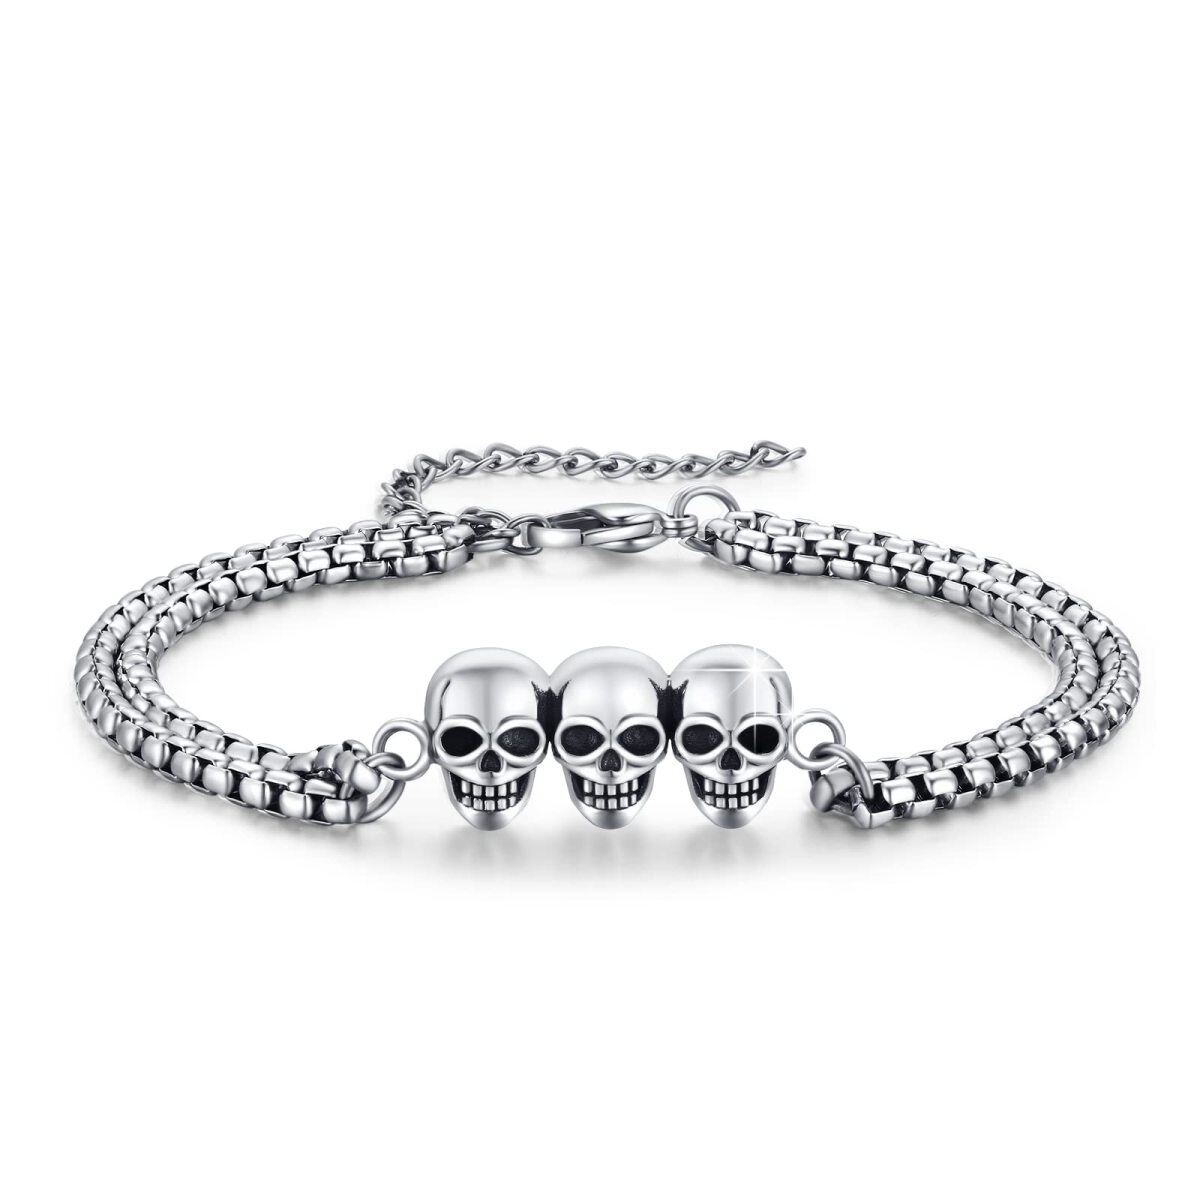 Stainless Steel with Retro Silver Plated Skull Pendant Bracelet for Men-1